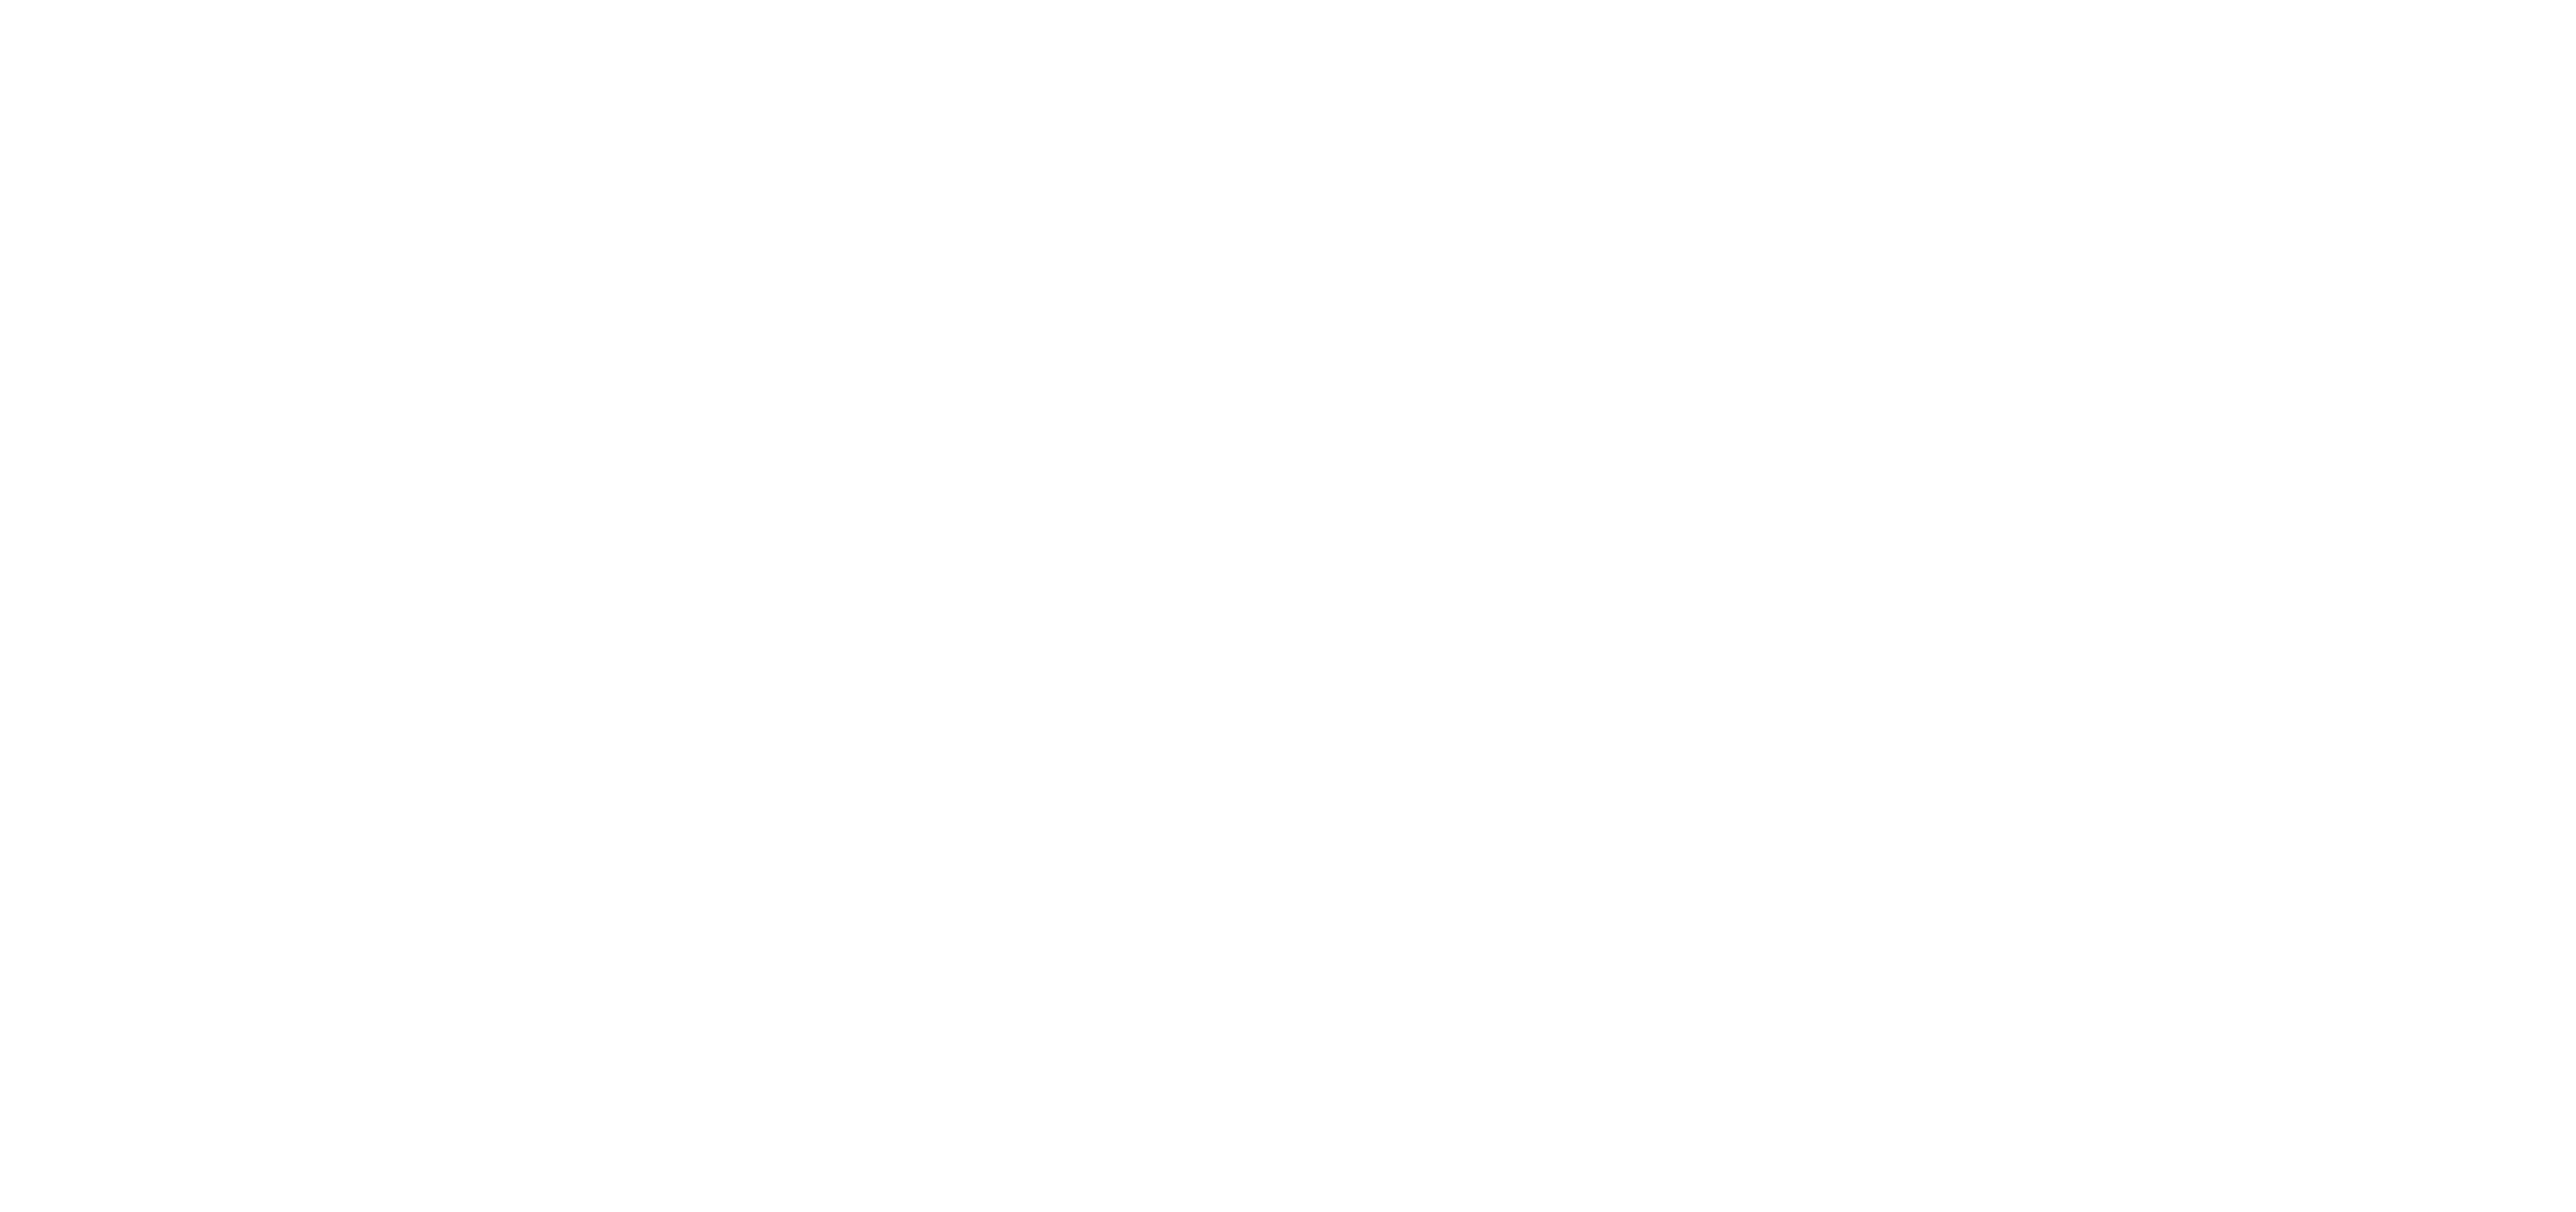 le logo du palace puerto rosario est blanc sur fond noir